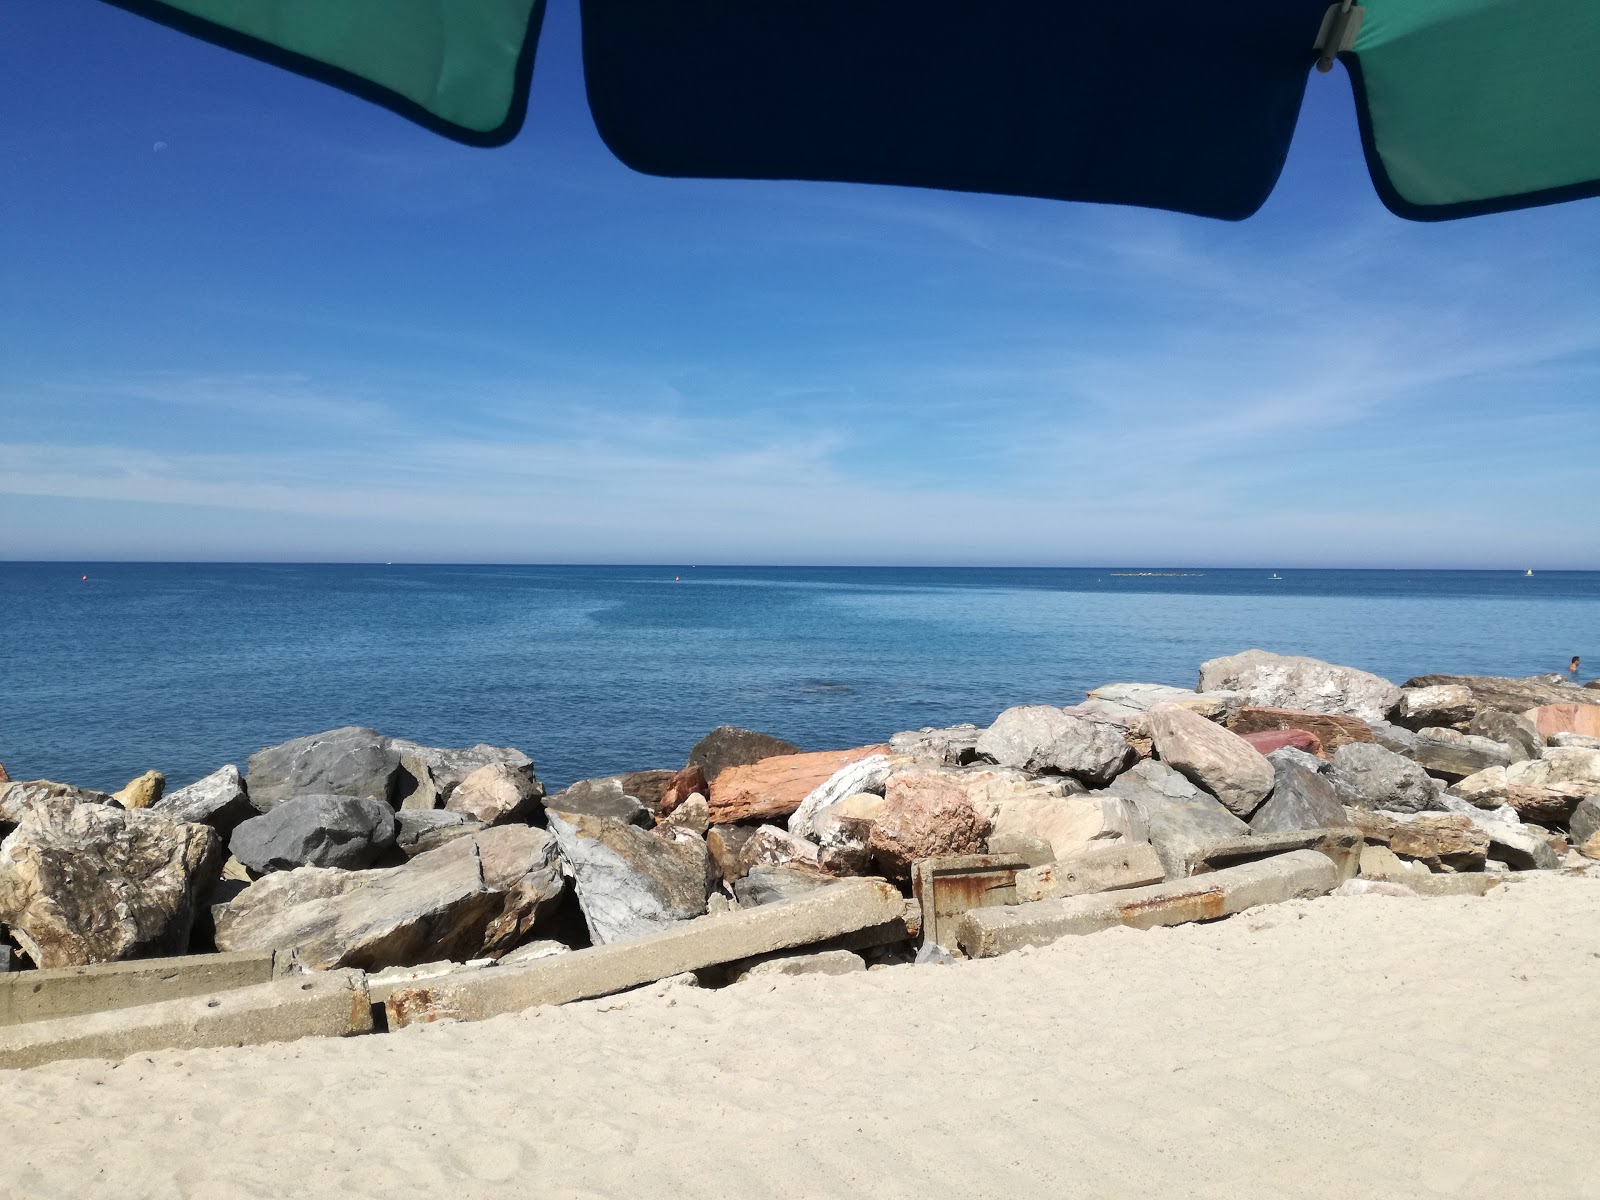 San Frediano beach'in fotoğrafı - rahatlamayı sevenler arasında popüler bir yer